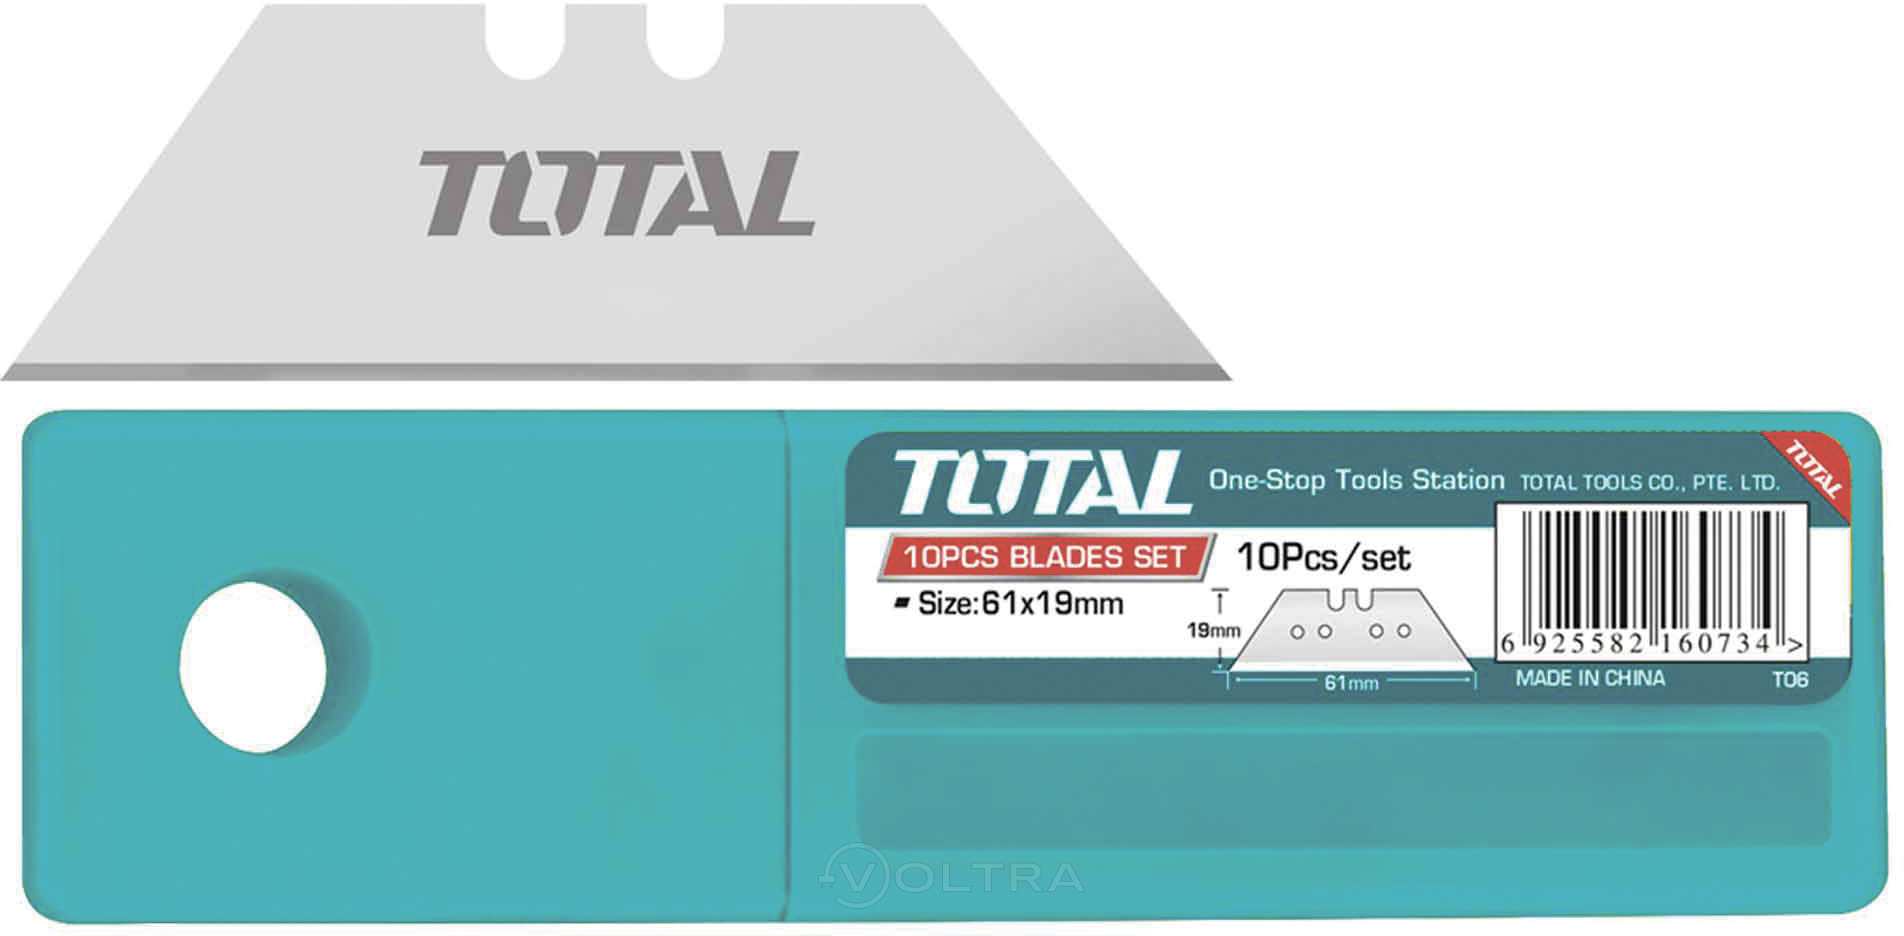 Hình ảnh 3 của mặt hàng Bộ 10 lưỡi dao tiện dụng total THT519001